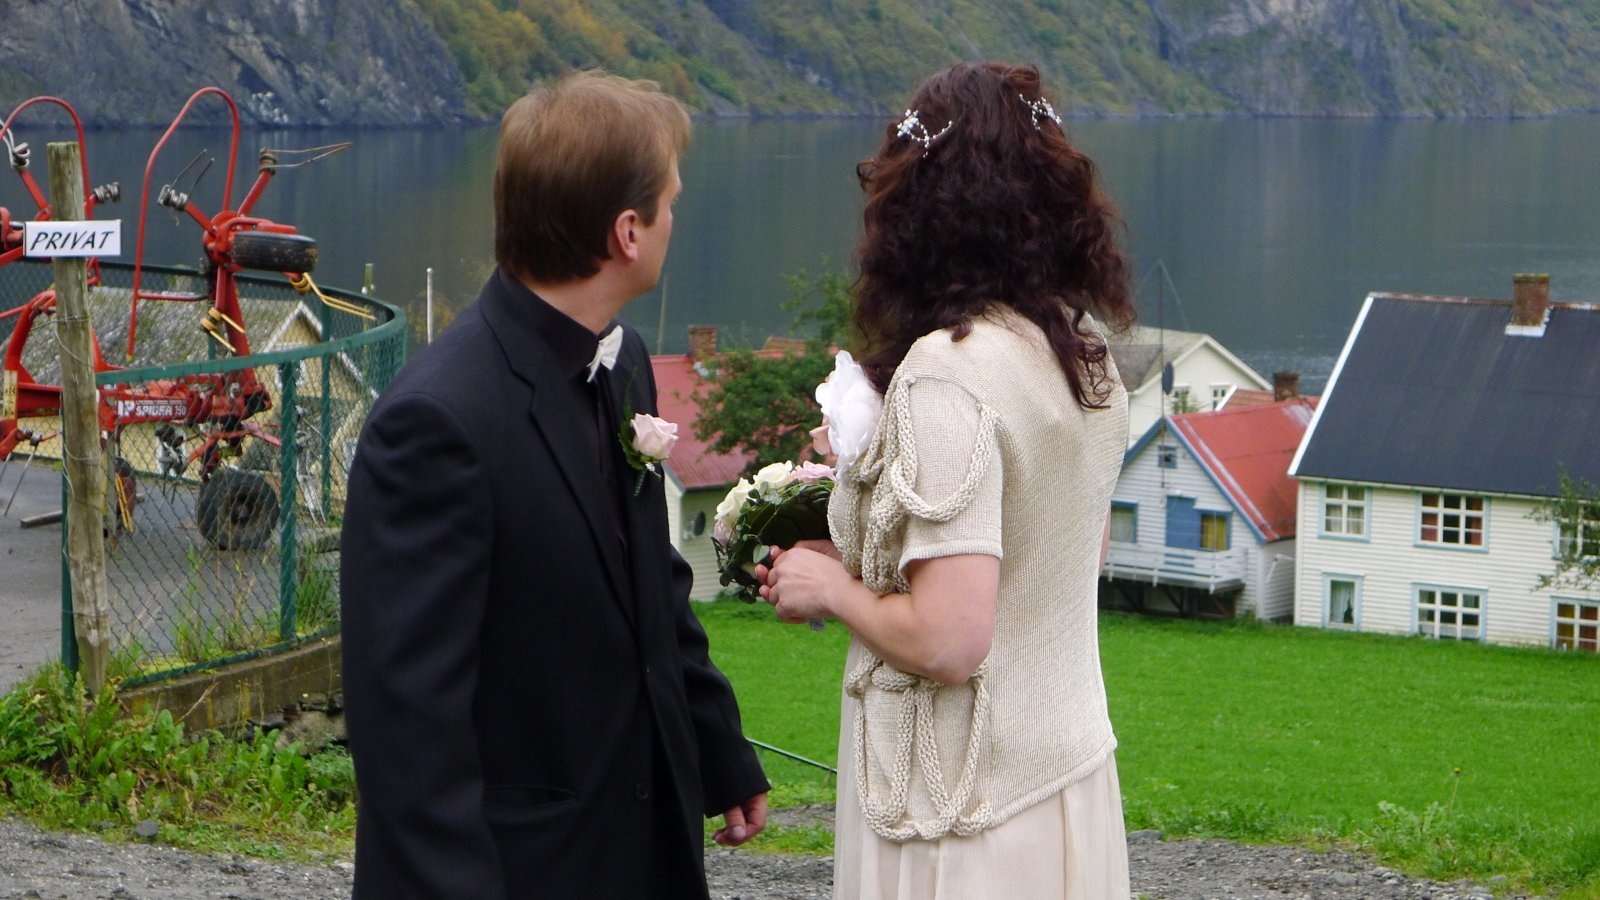 8 underverker ved et bryllup i Norge: Pastorens latter om den første natten ble husket lenge